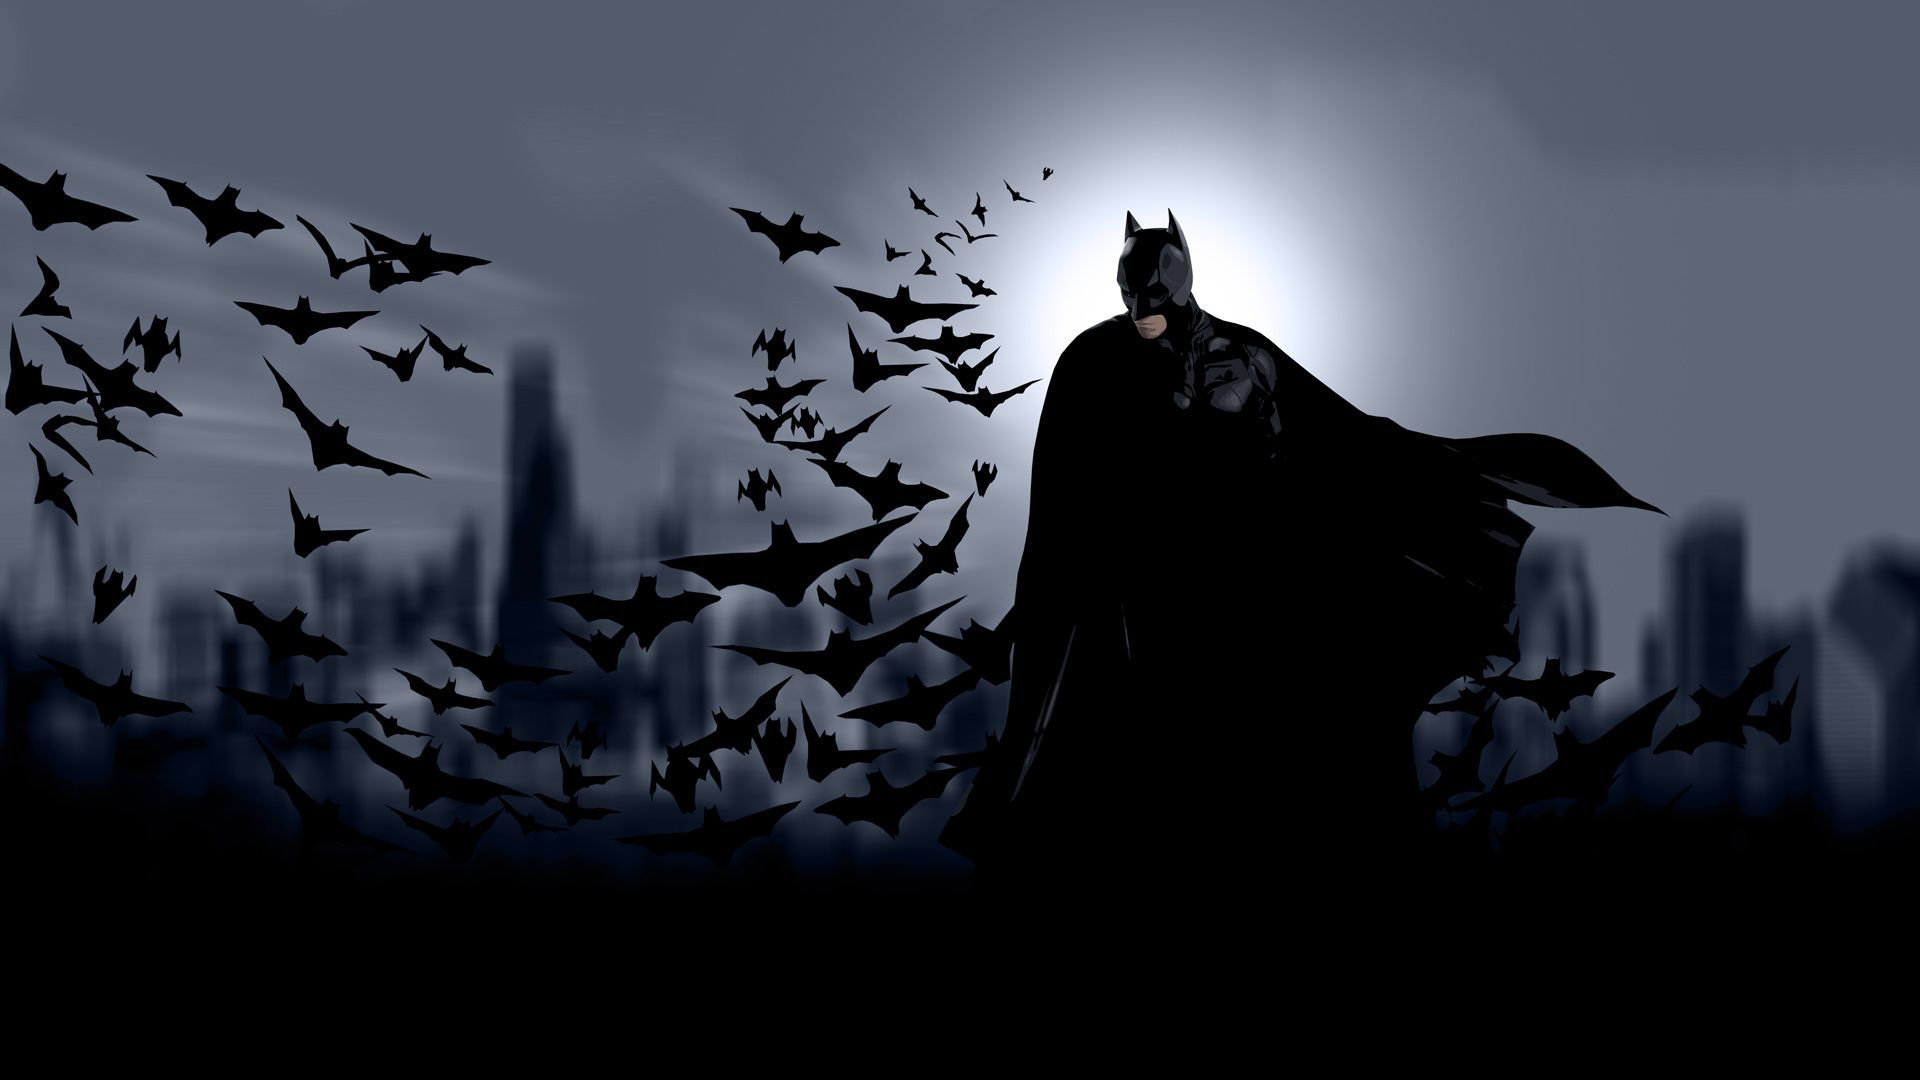 1045 Batman HD Wallpapers | Backgrounds - Wallpaper Abyss